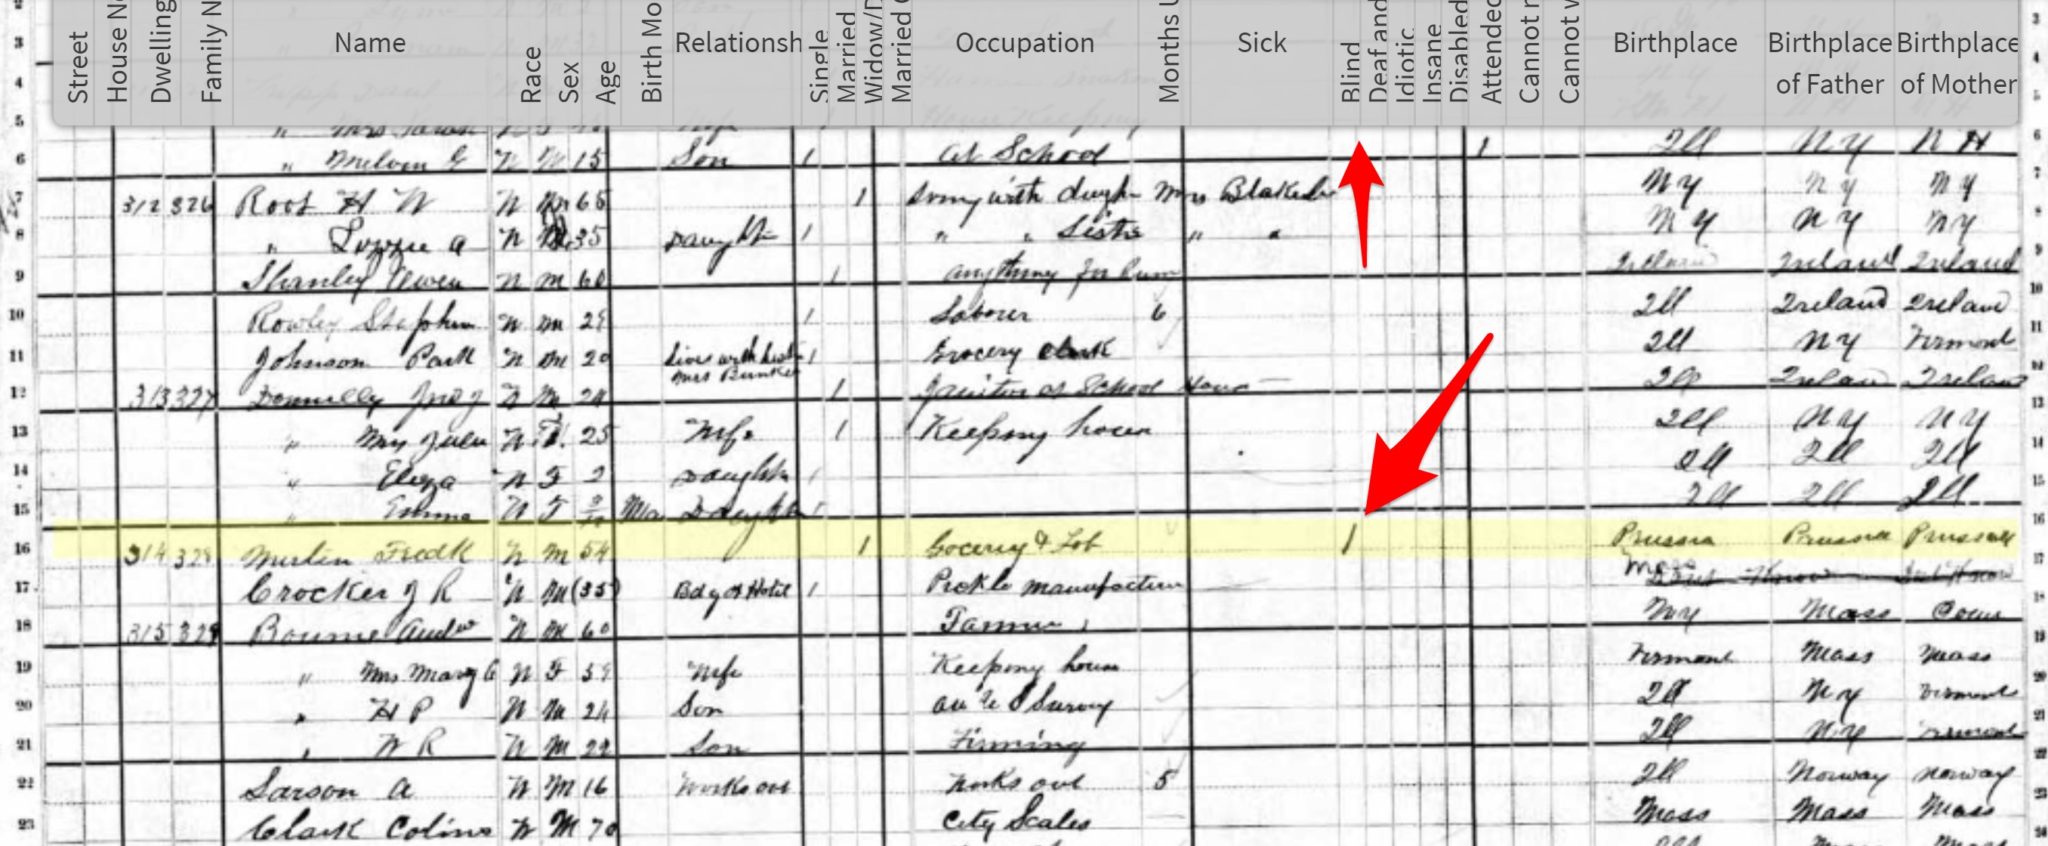 Fred Merten Marked as Blind in 1880 Census